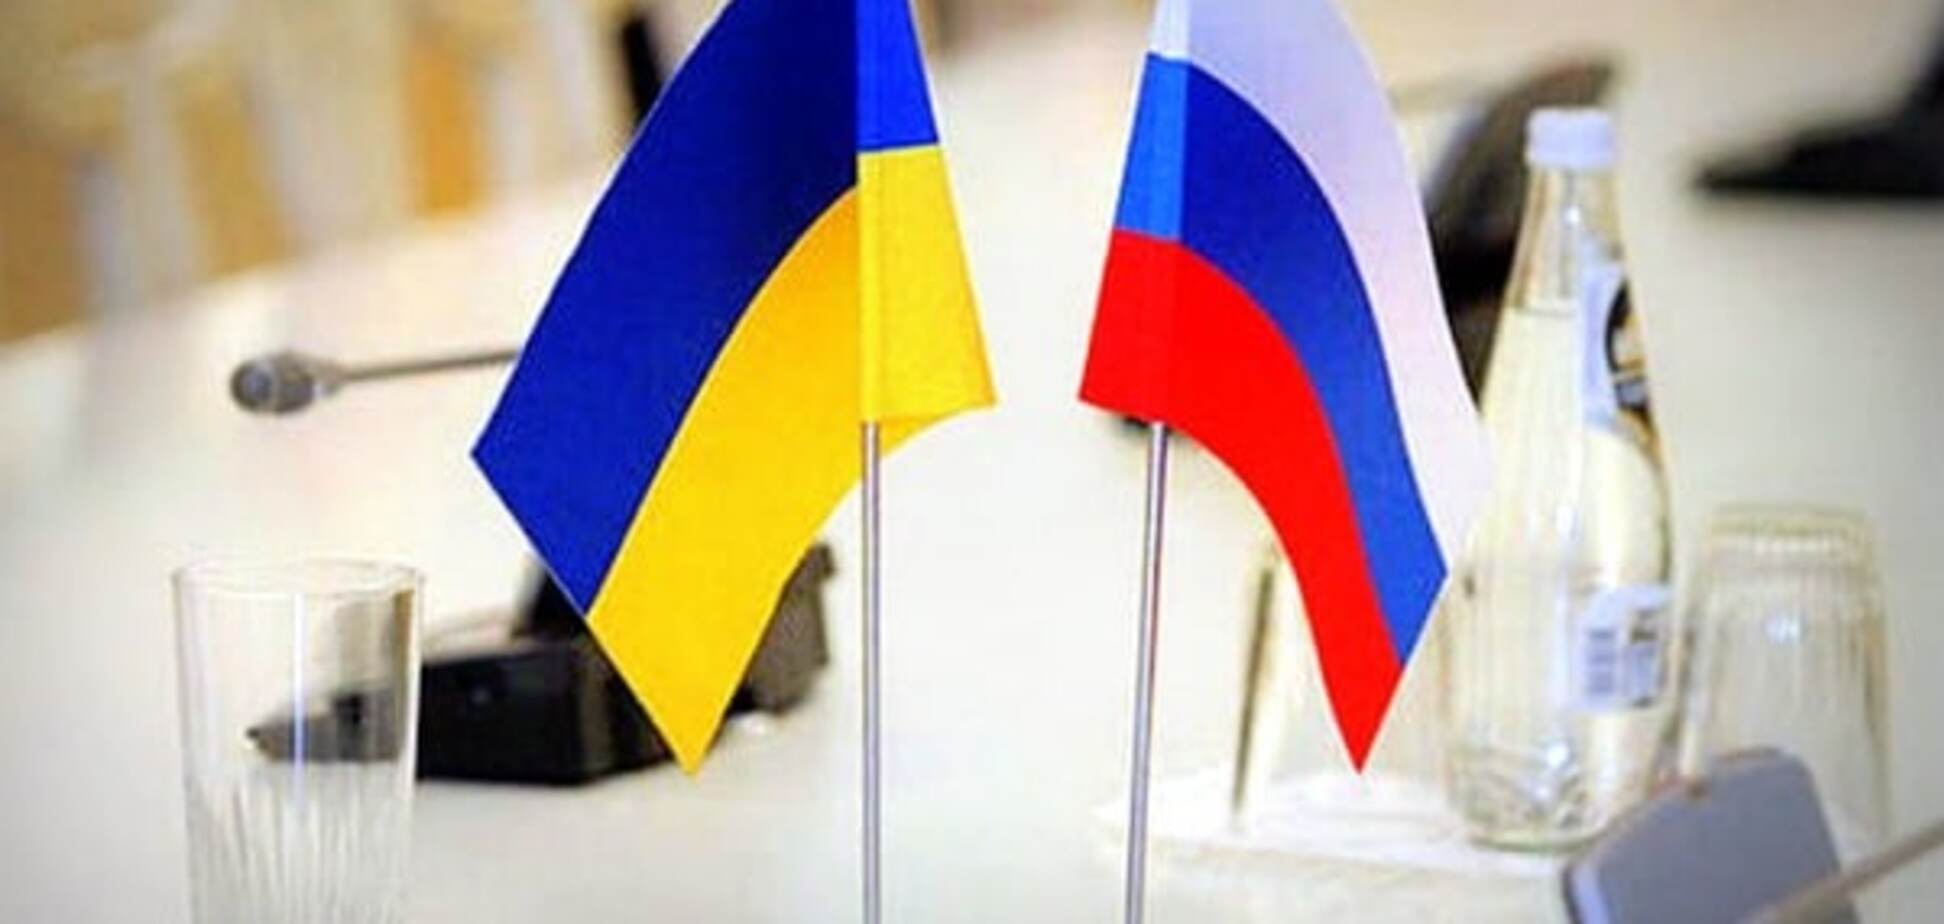 Флаги Украины и РФ